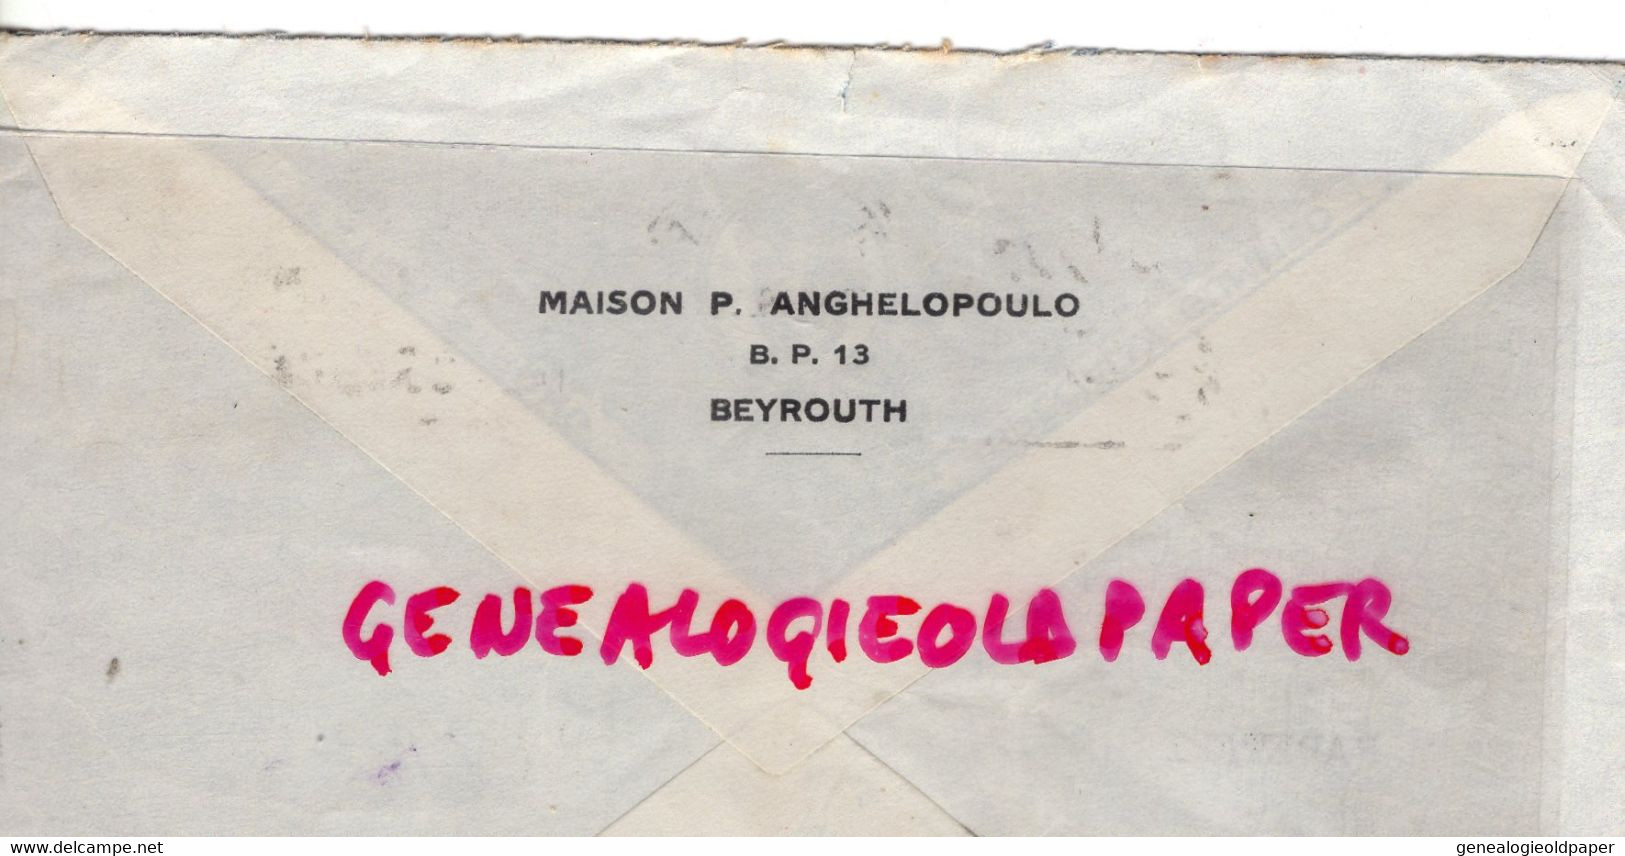 LIBAN- LETTRE MAISON P. ANGHELOPOULO - BEYROUTH- A PAPETERIE LUCIEN DESBORDES -BEAUMONT PAR ANGOULEME-1939 - Lebanon